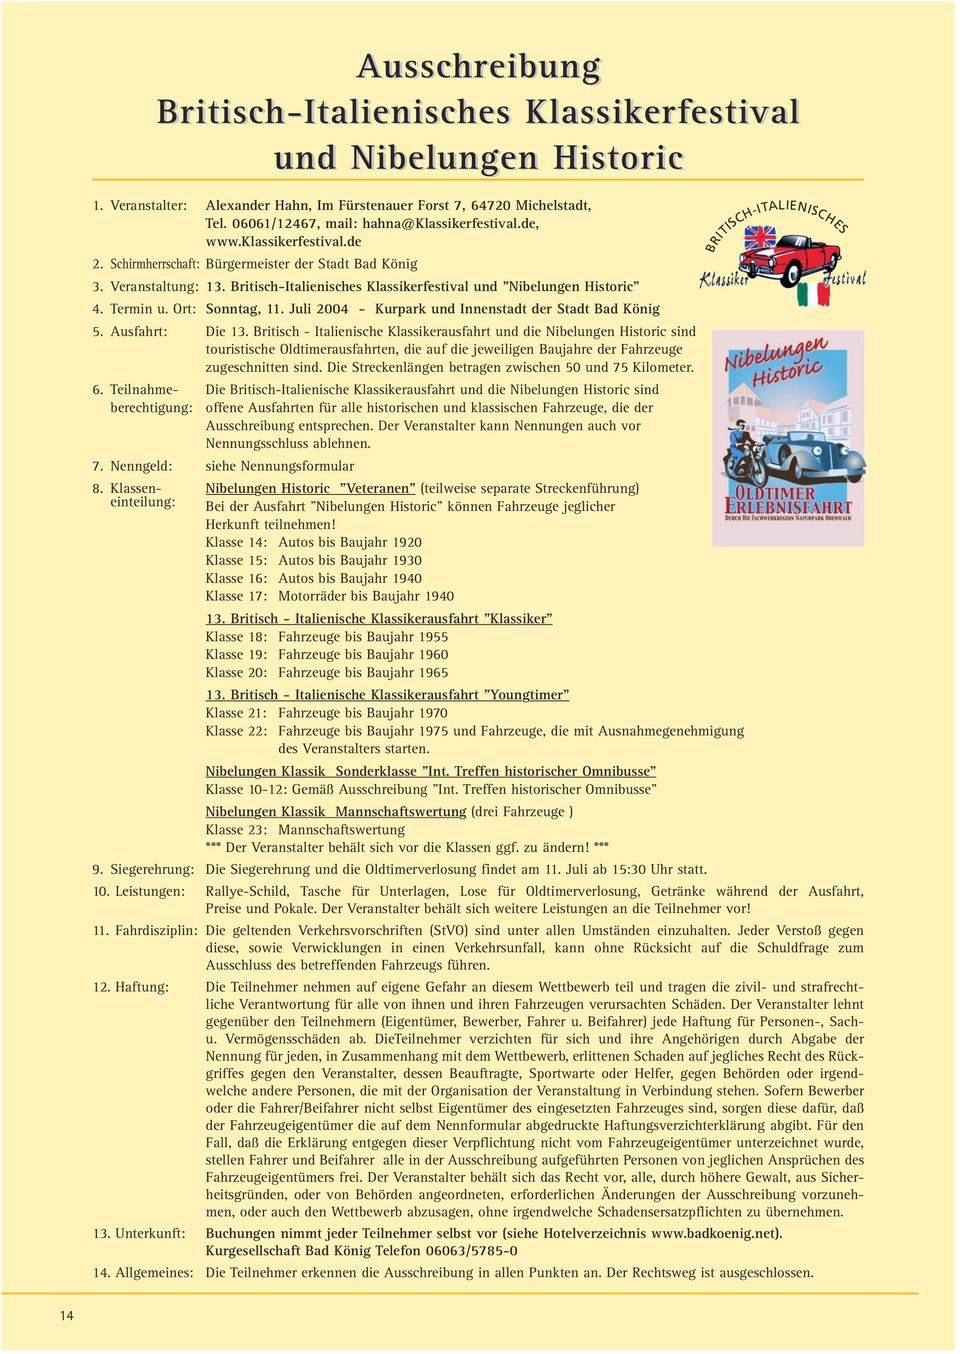 Britisch-Italienisches Klassikerfestival und "Nibelungen Historic" 4. Termin u. Ort: Sonntag, 11. Juli 2004 - Kurpark und Innenstadt der Stadt Bad König 5. Ausfahrt: Die 13.